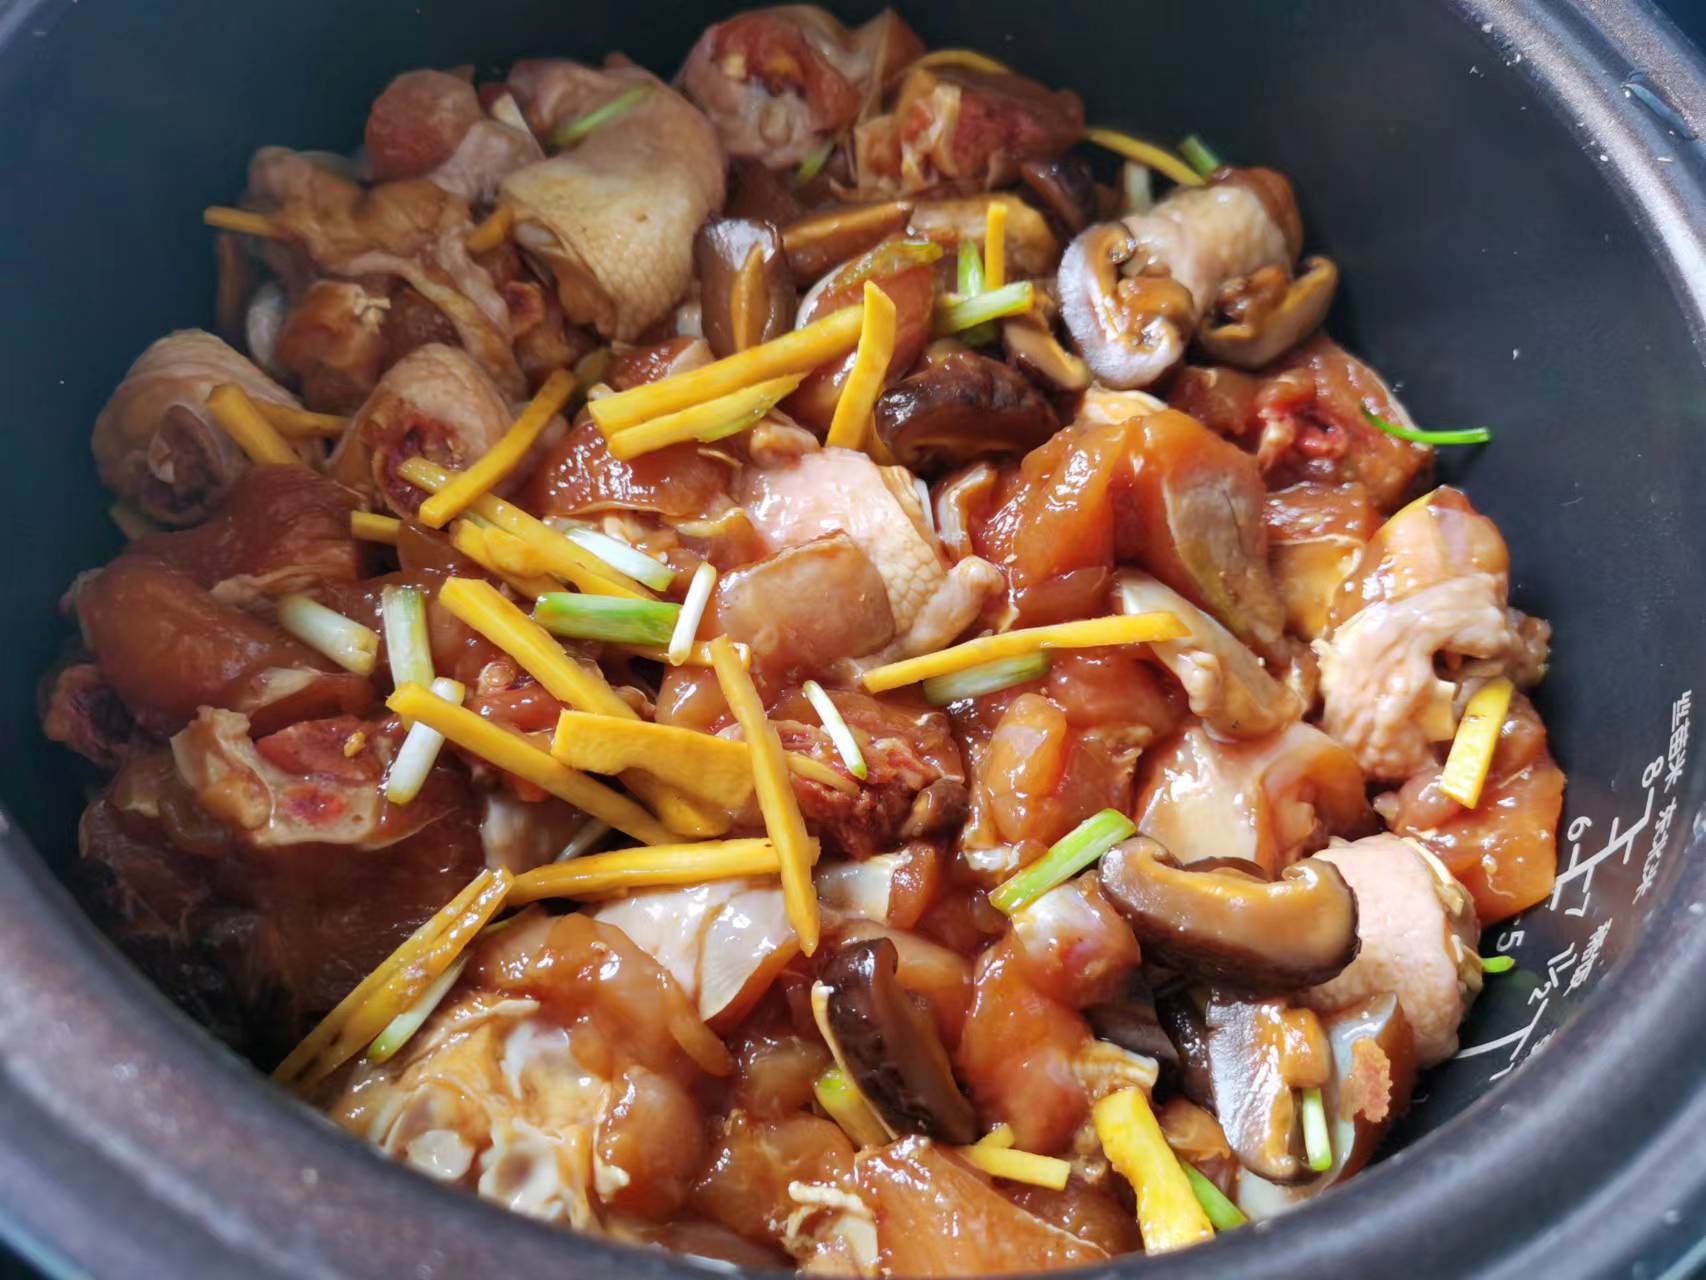 用电饭煲就能轻松做好香菇滑鸡煲仔饭,做法简单易学,米饭飘香